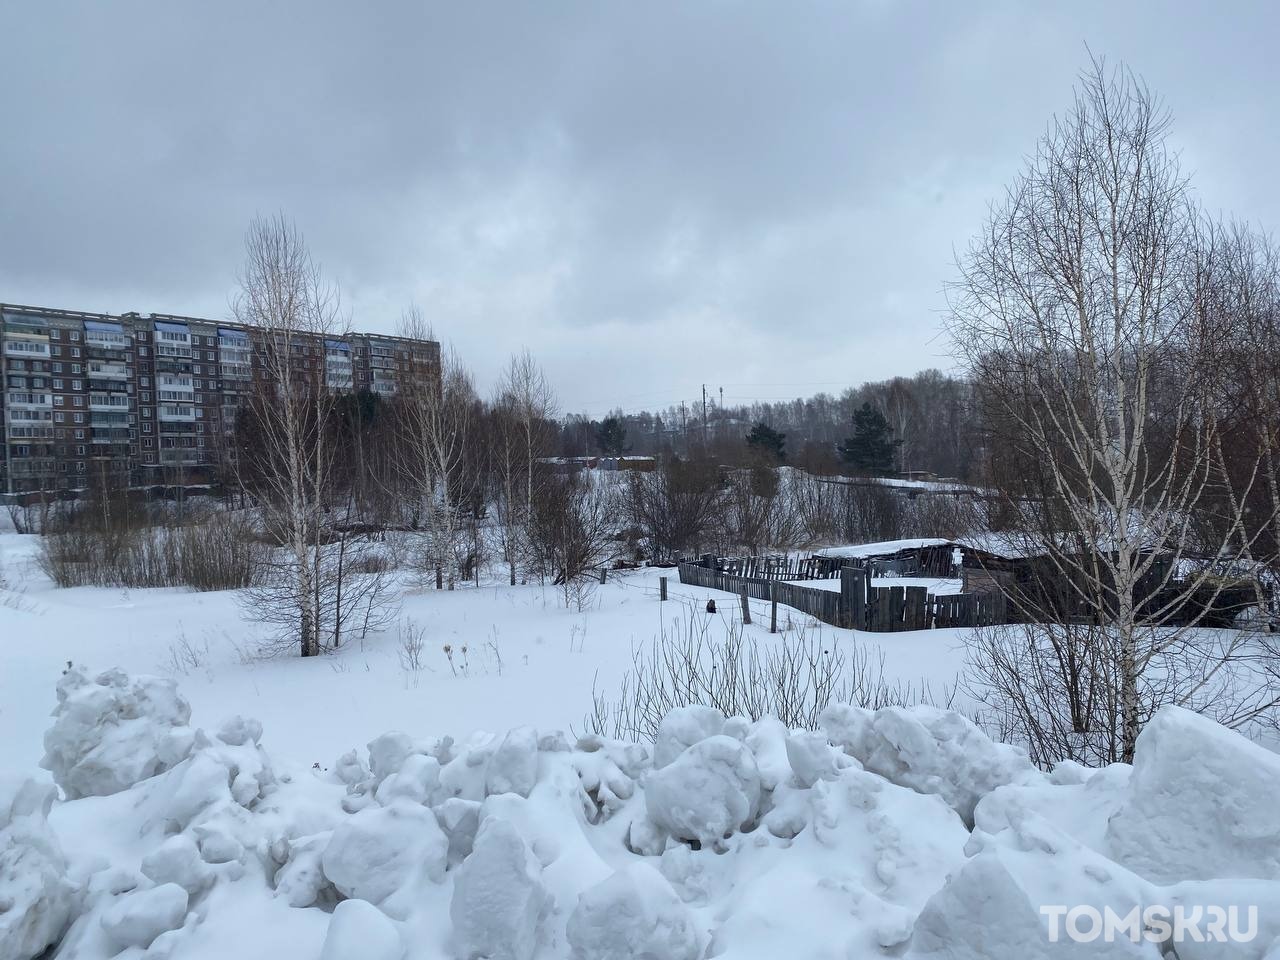 Две новые поликлиники могут появиться в Томске: Михаил Ратнер рассказал о перспективах строительства